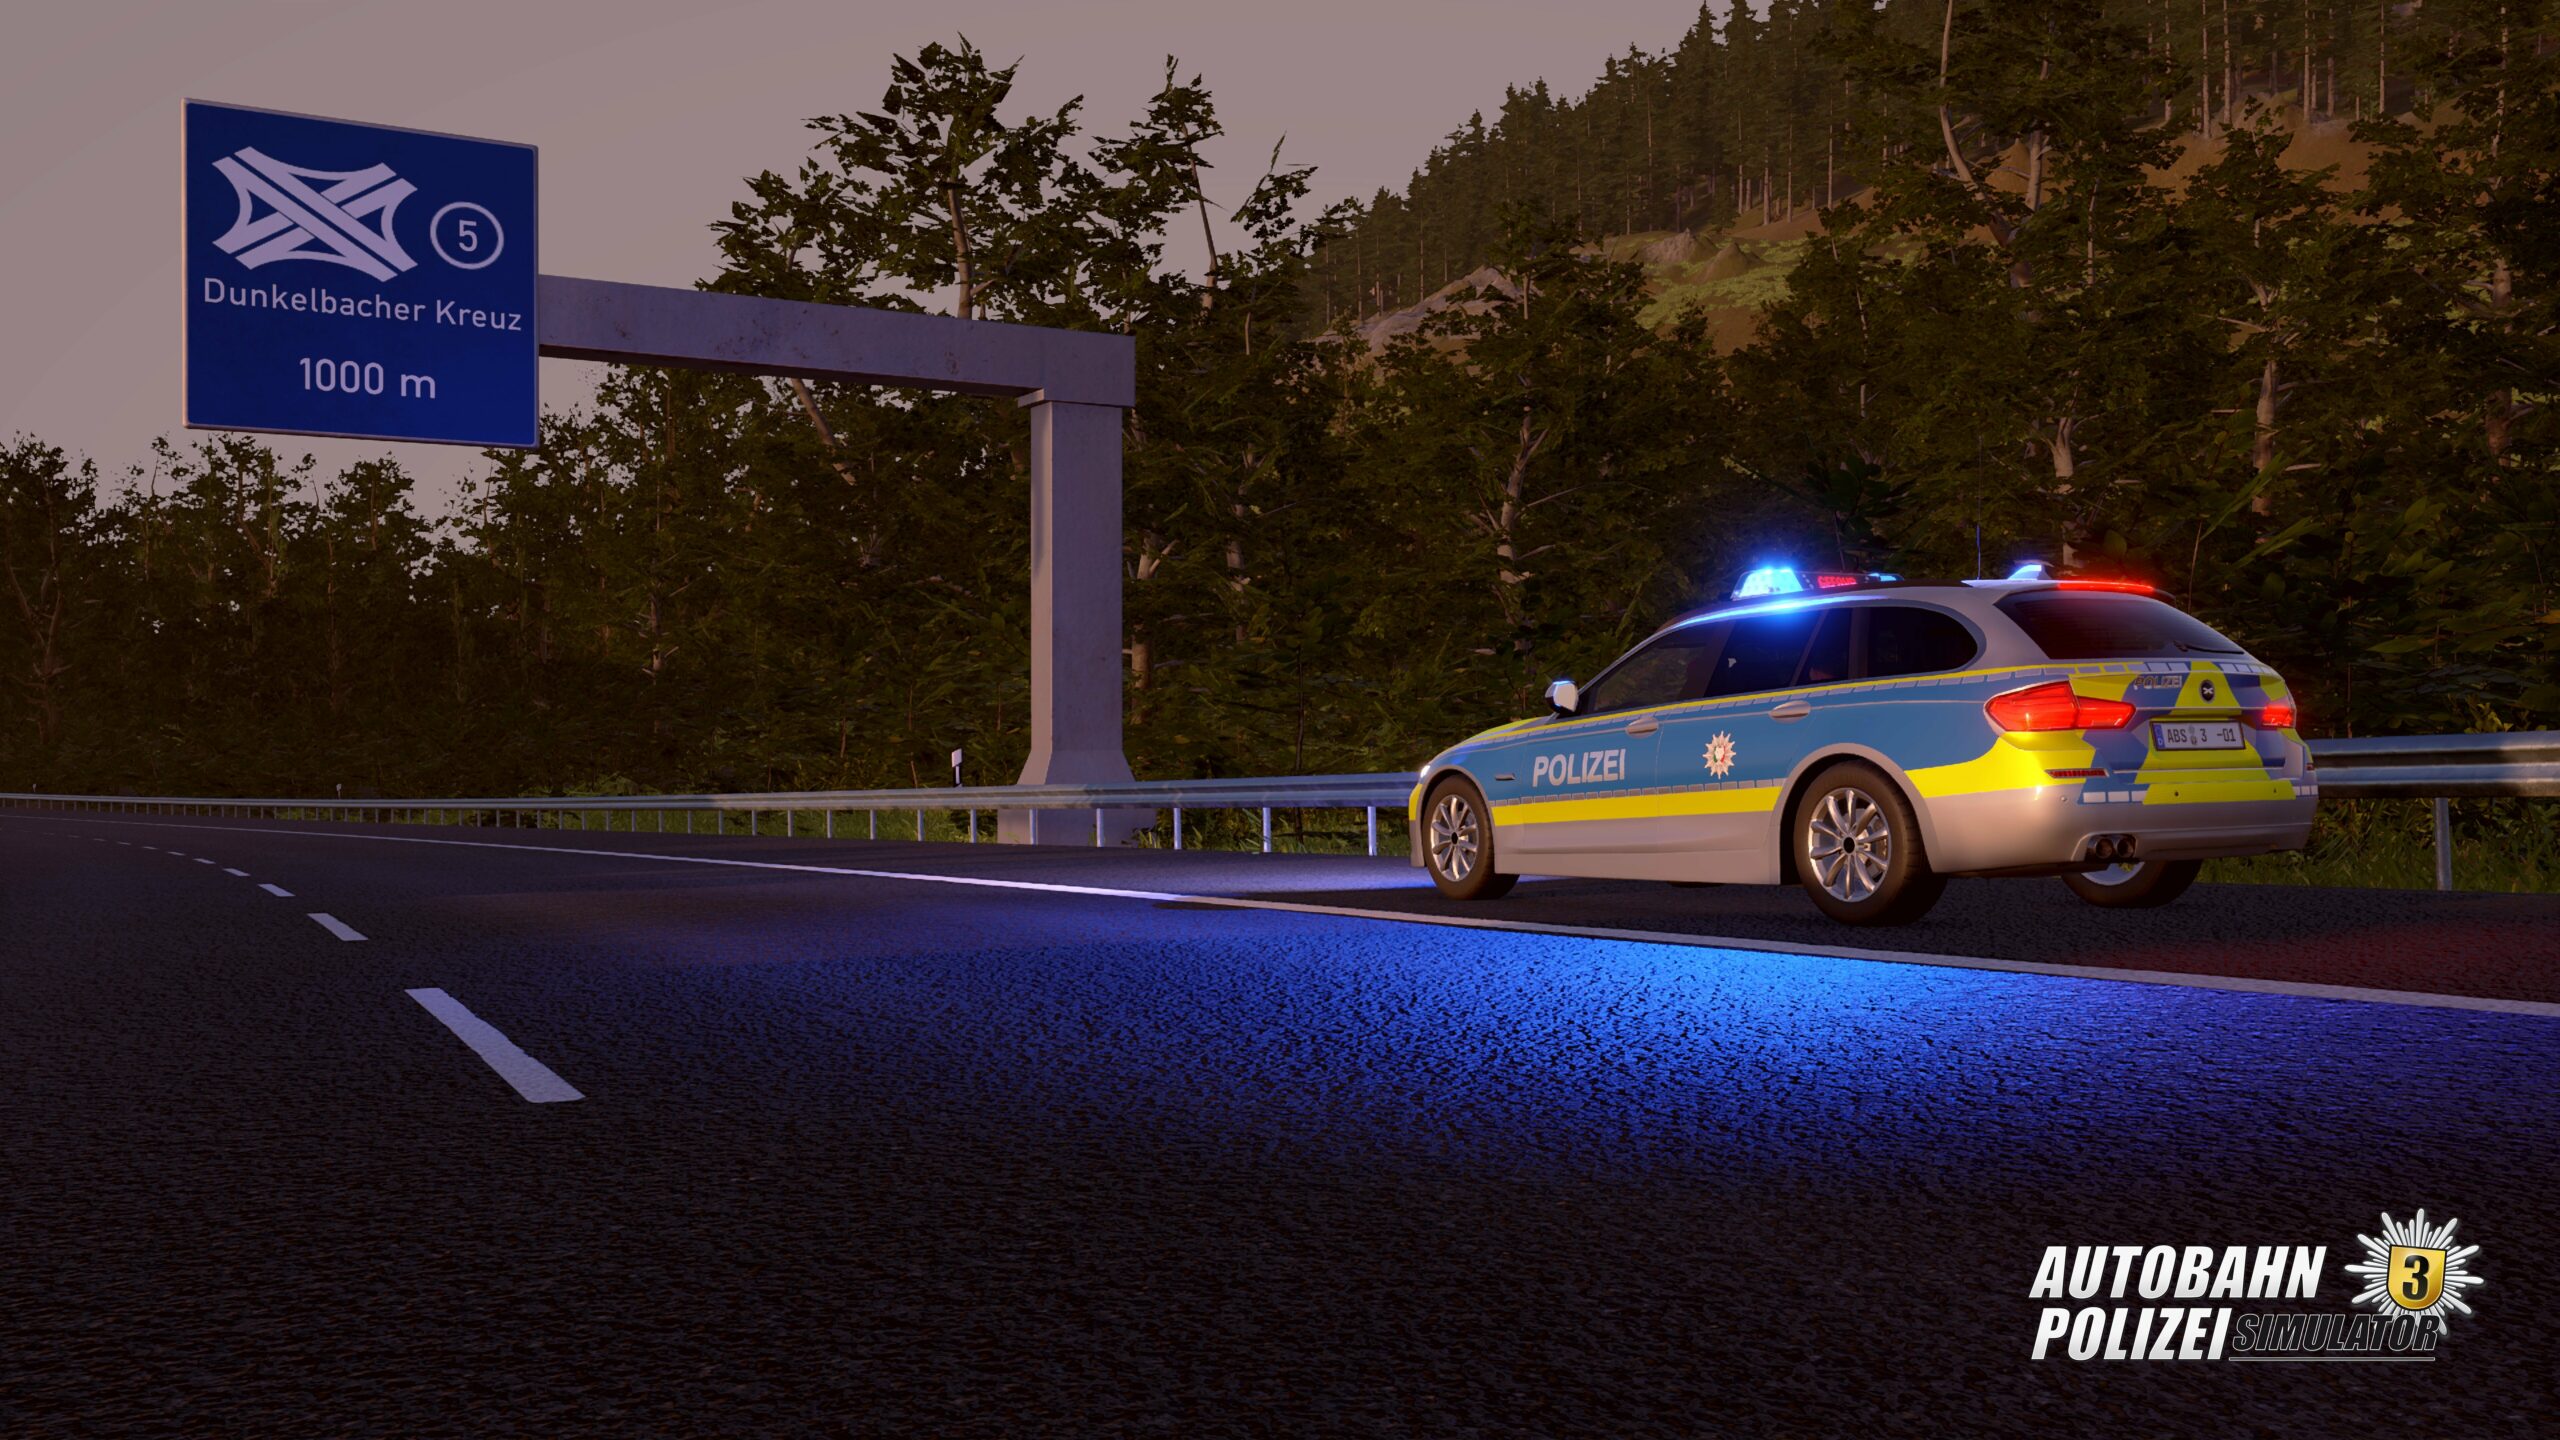 Autobahnpolizei Simulator 3